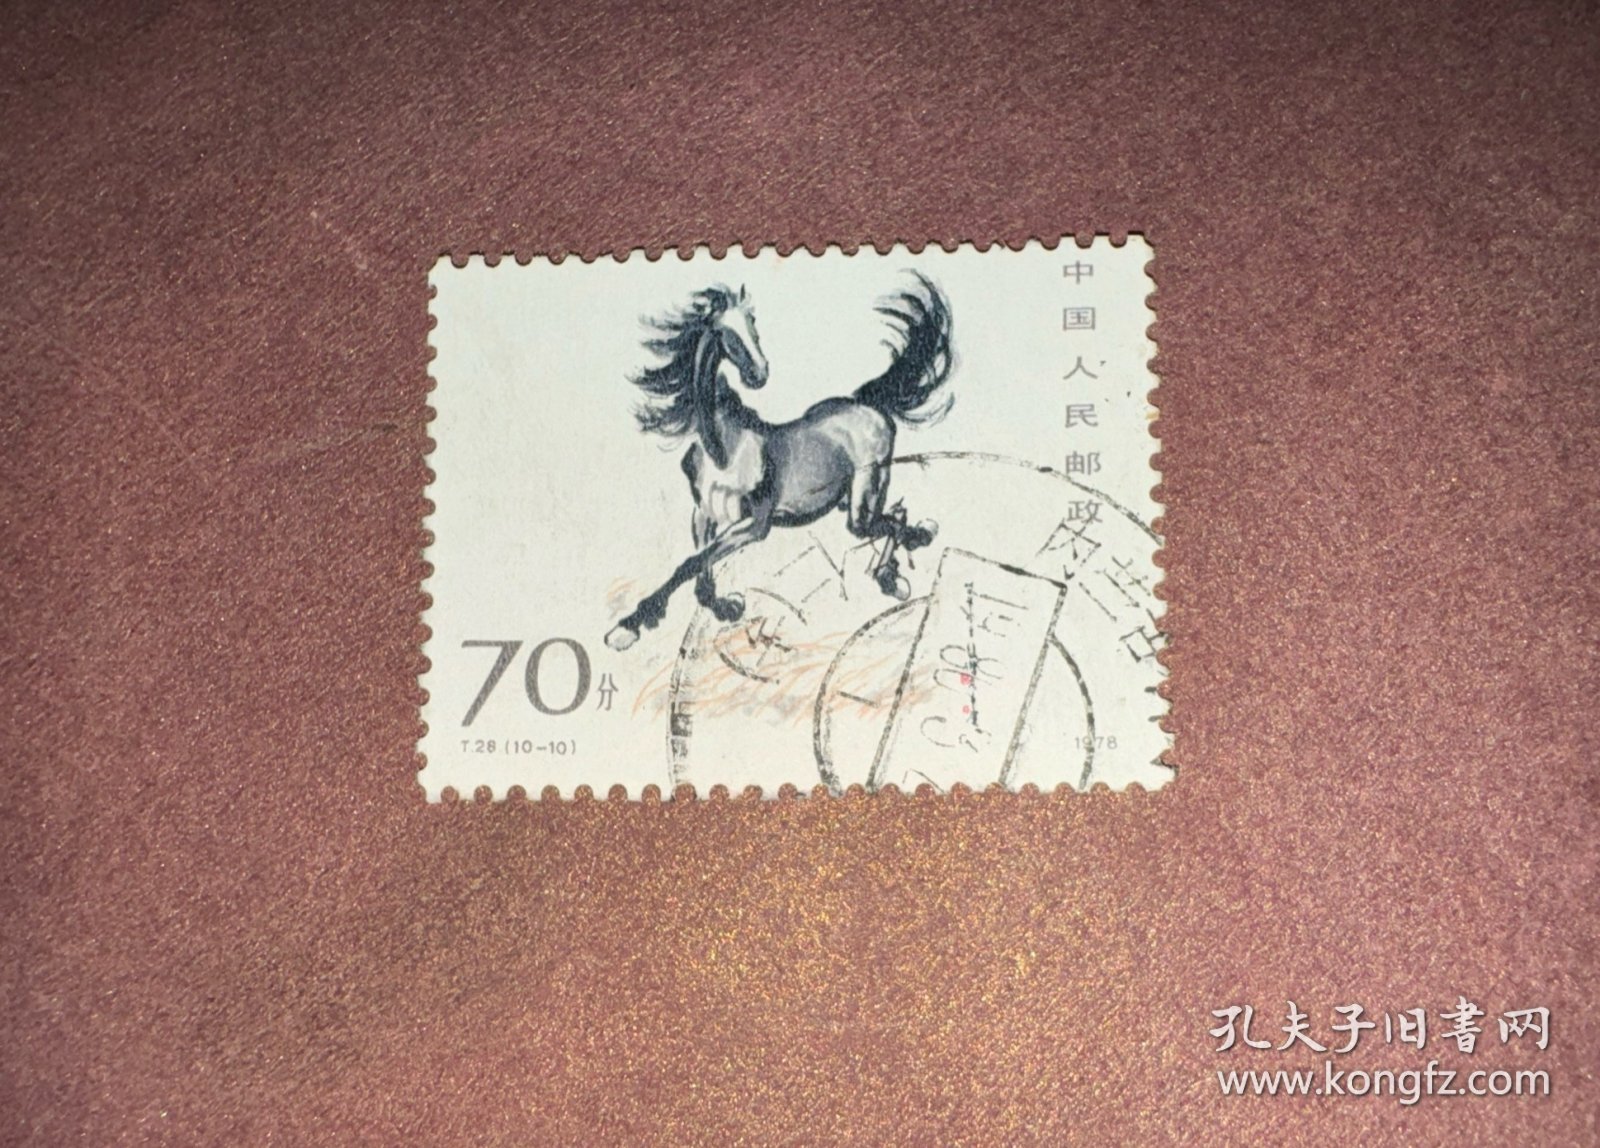 信销邮票 T28  10-10 奔马 70分